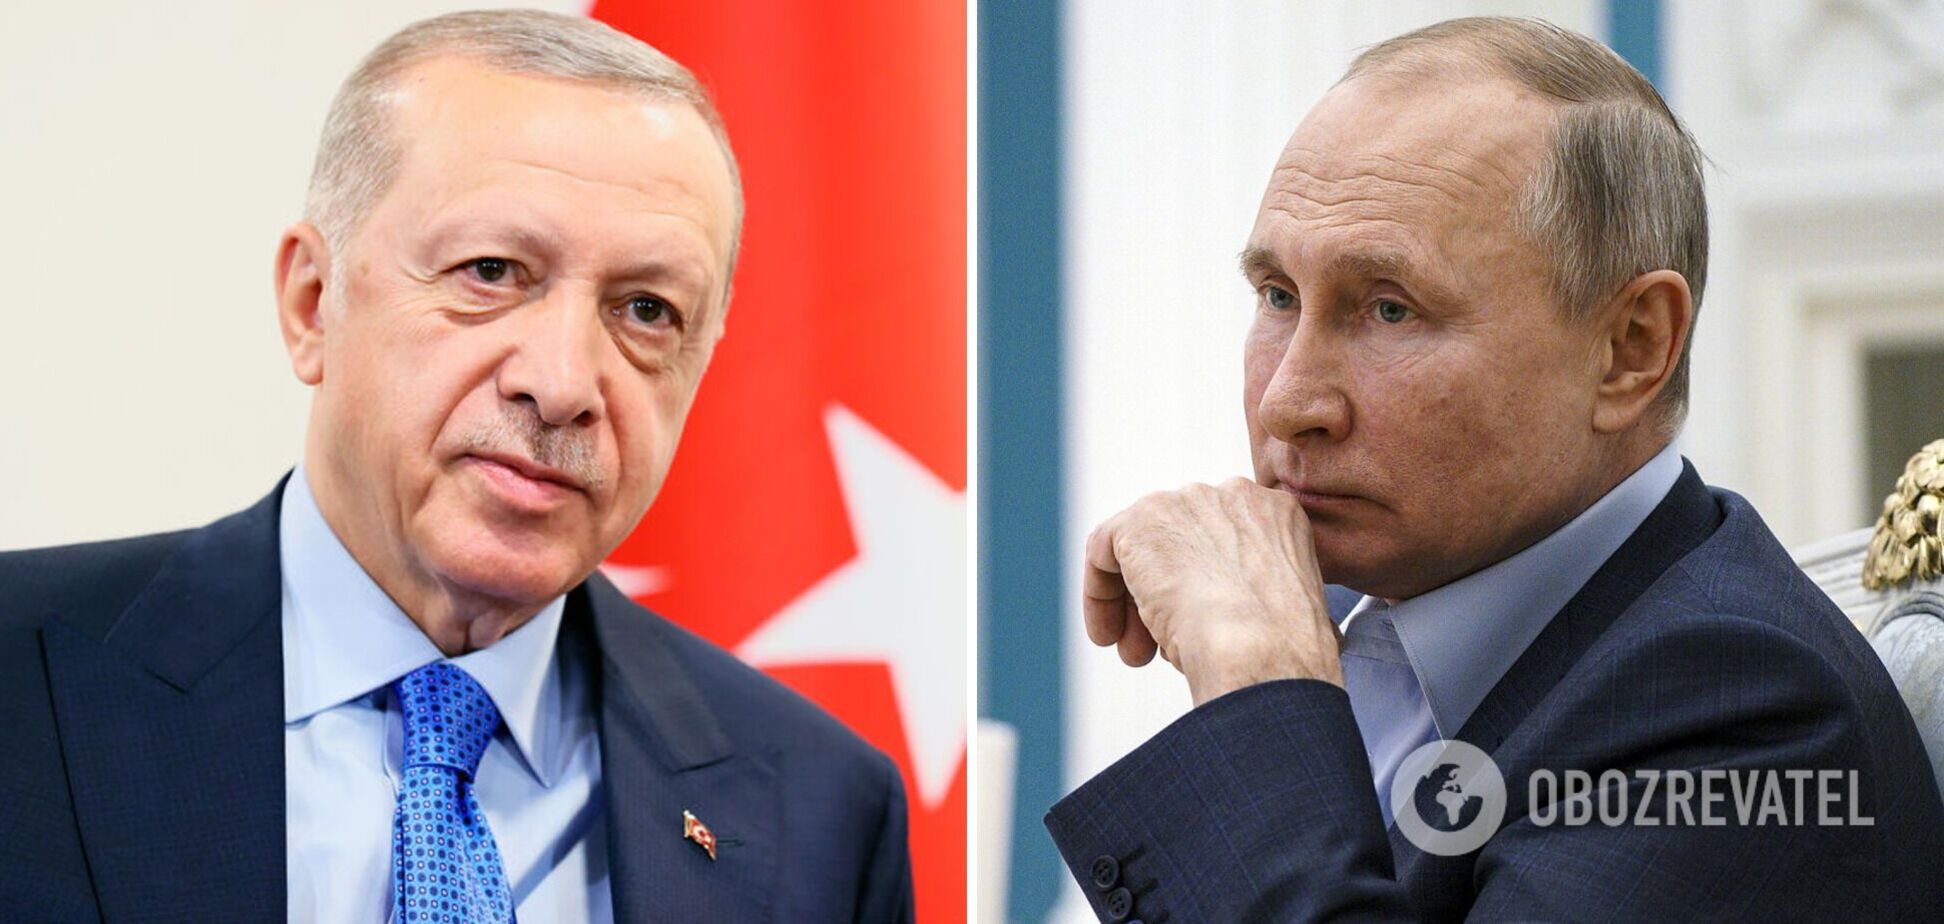 Нагірний Карабах оголосив про перемогу спільного проєкту Путіна-Ердогана. Єреван пішов на втрату свідомо